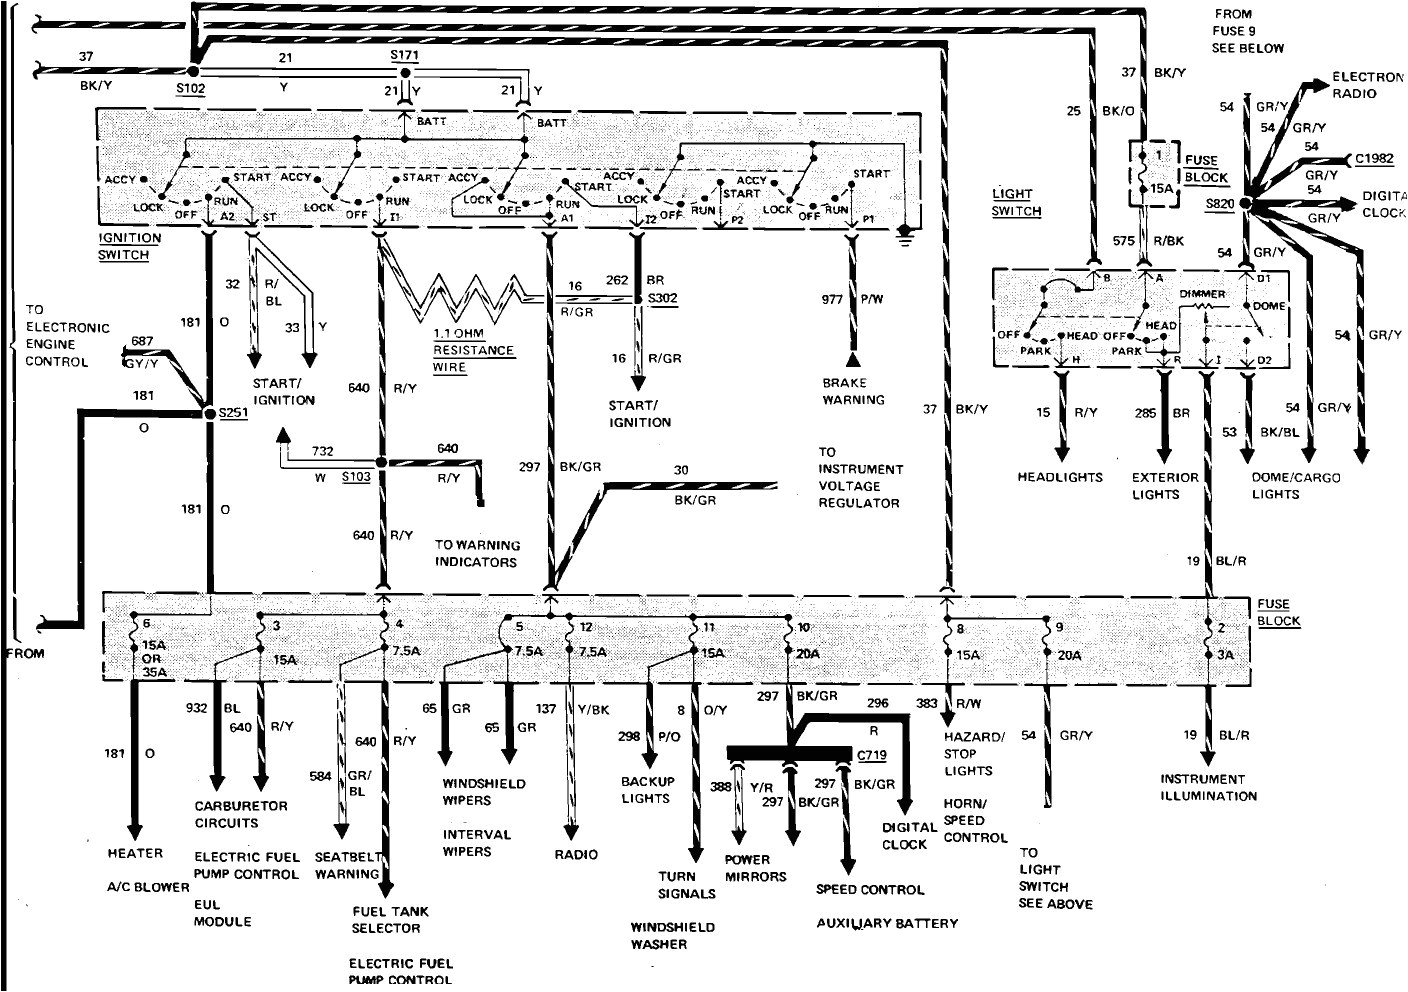 1978 dodge motorhome wiring diagram wiring diagram databasetiffin motorhome wiring diagram inspirational